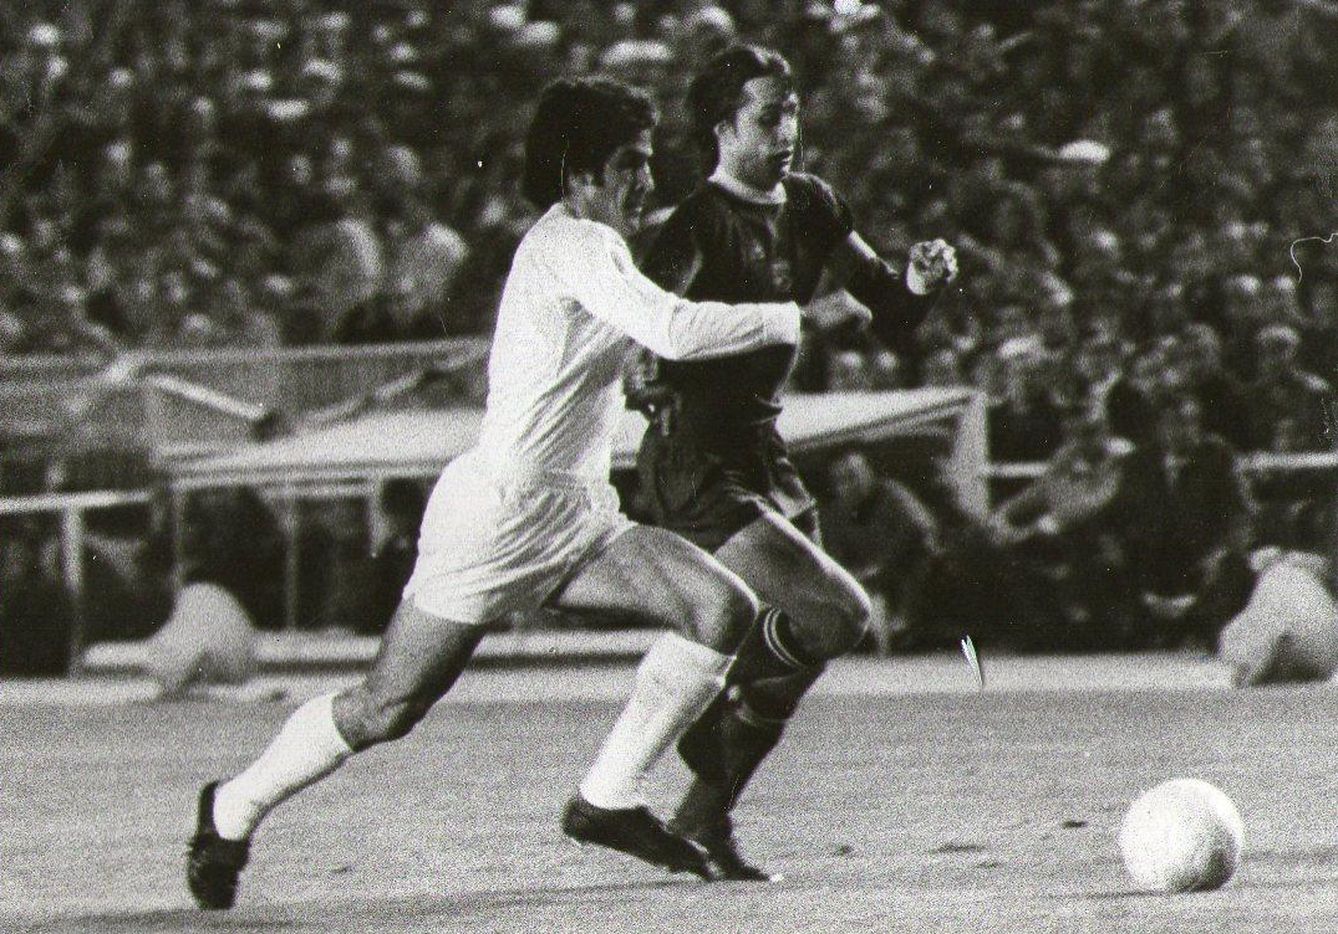 Benito persigue a Cruyff cuando jugaba en el Ajax en abril de 1973 (FOTO: Lmg)